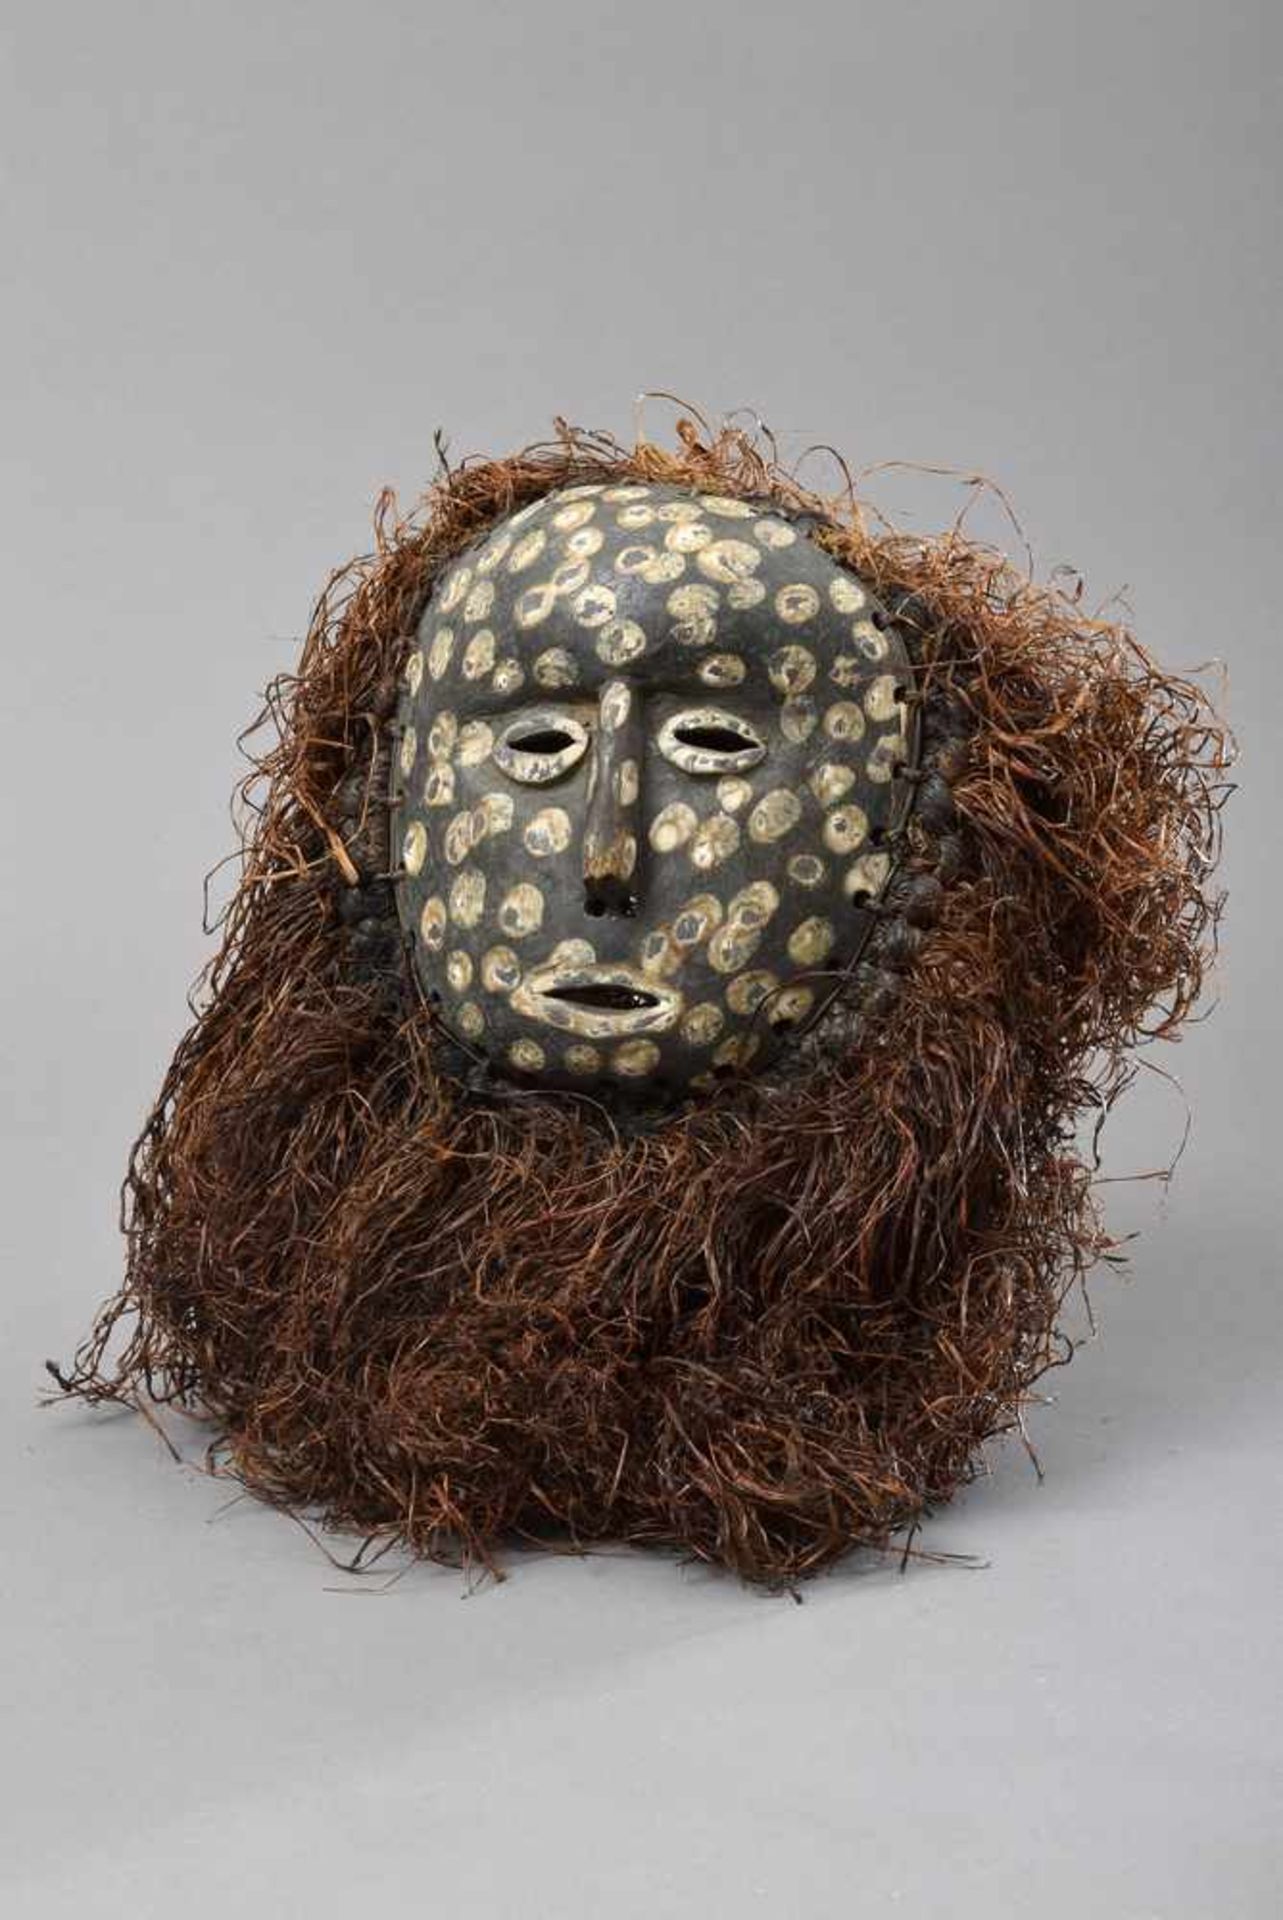 Afrikanische Maske mit Pflanzenfasern, Holz geschnitz, partiell mit weißen Punkten, H. 19cm